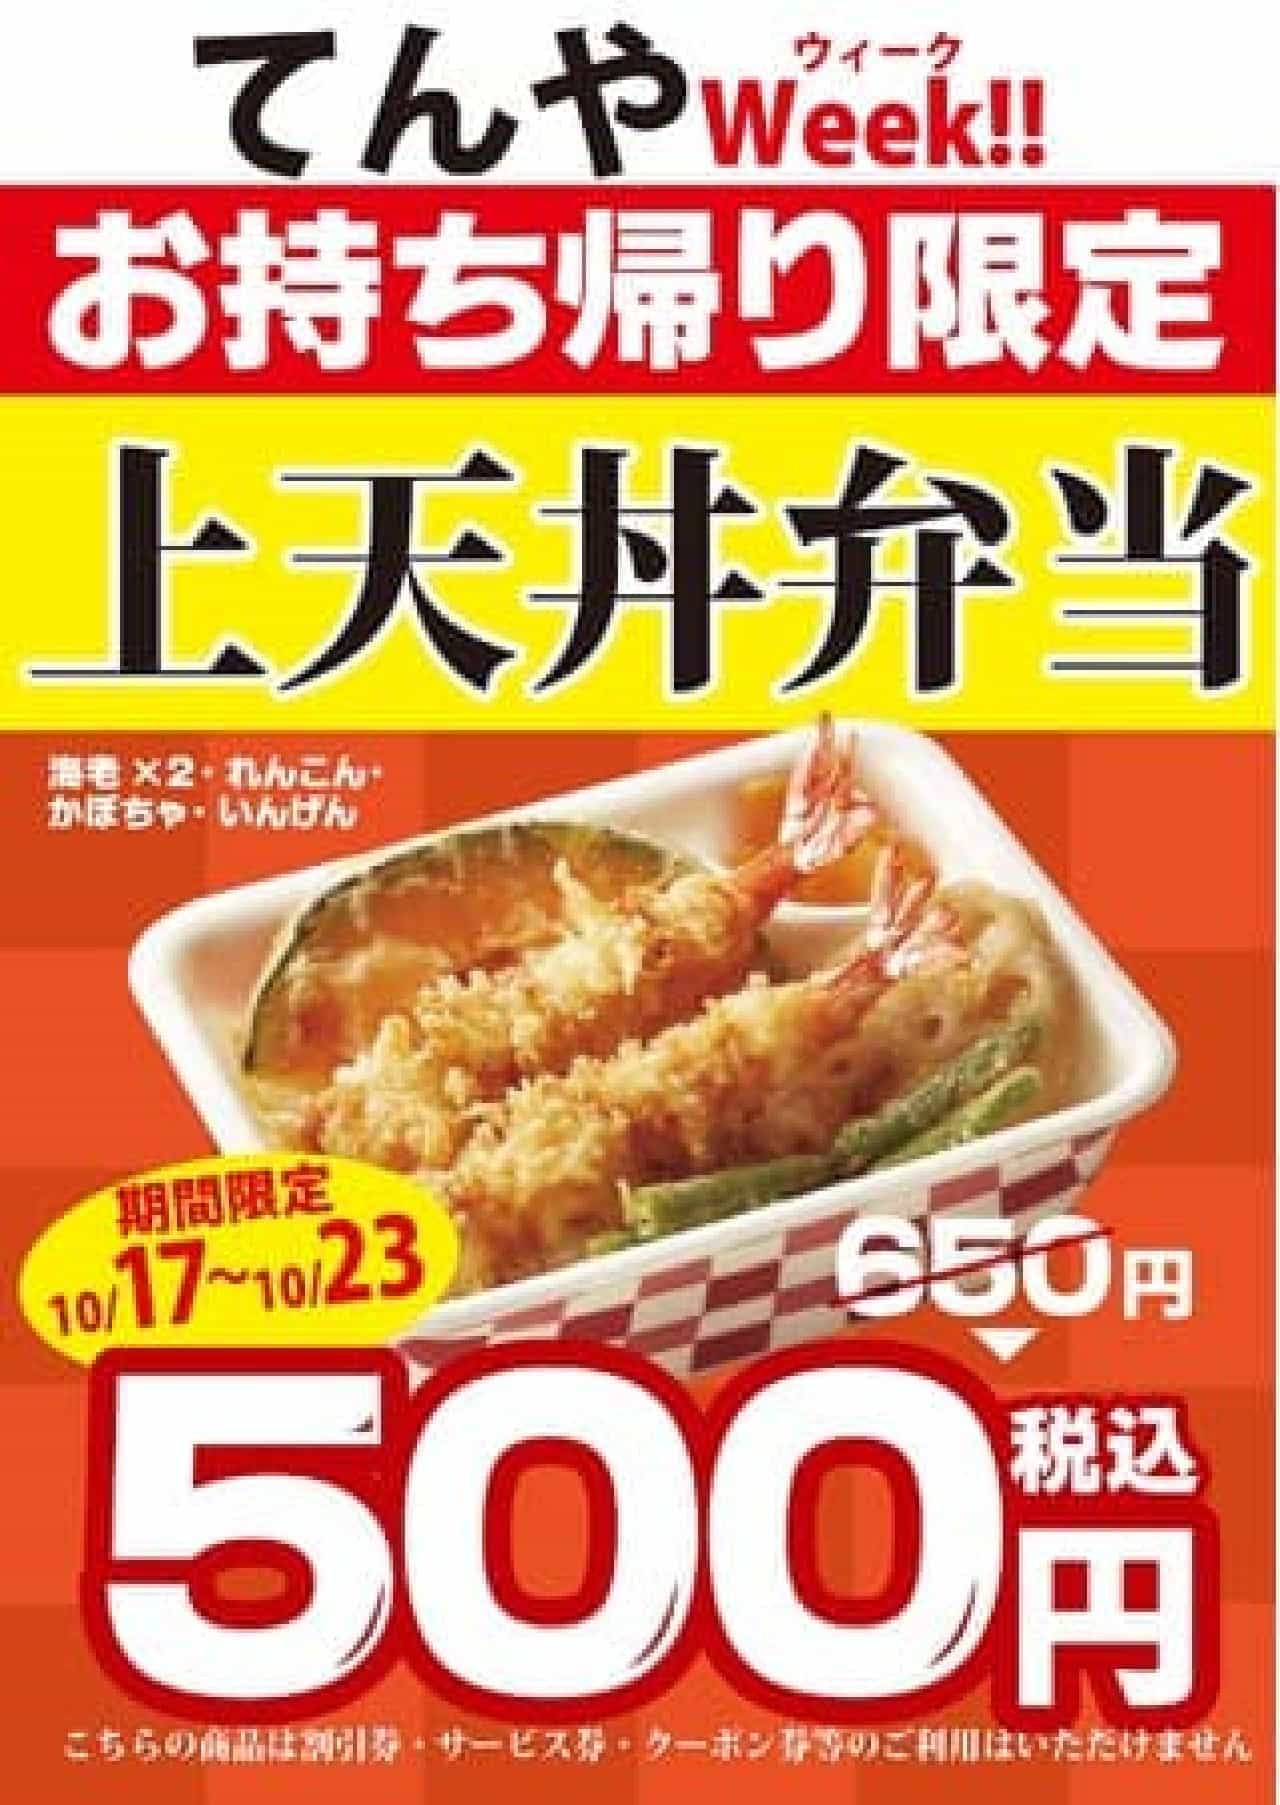 Tendon Tenya "Kamitendon Bento" becomes 500 yen "Tenya Week".